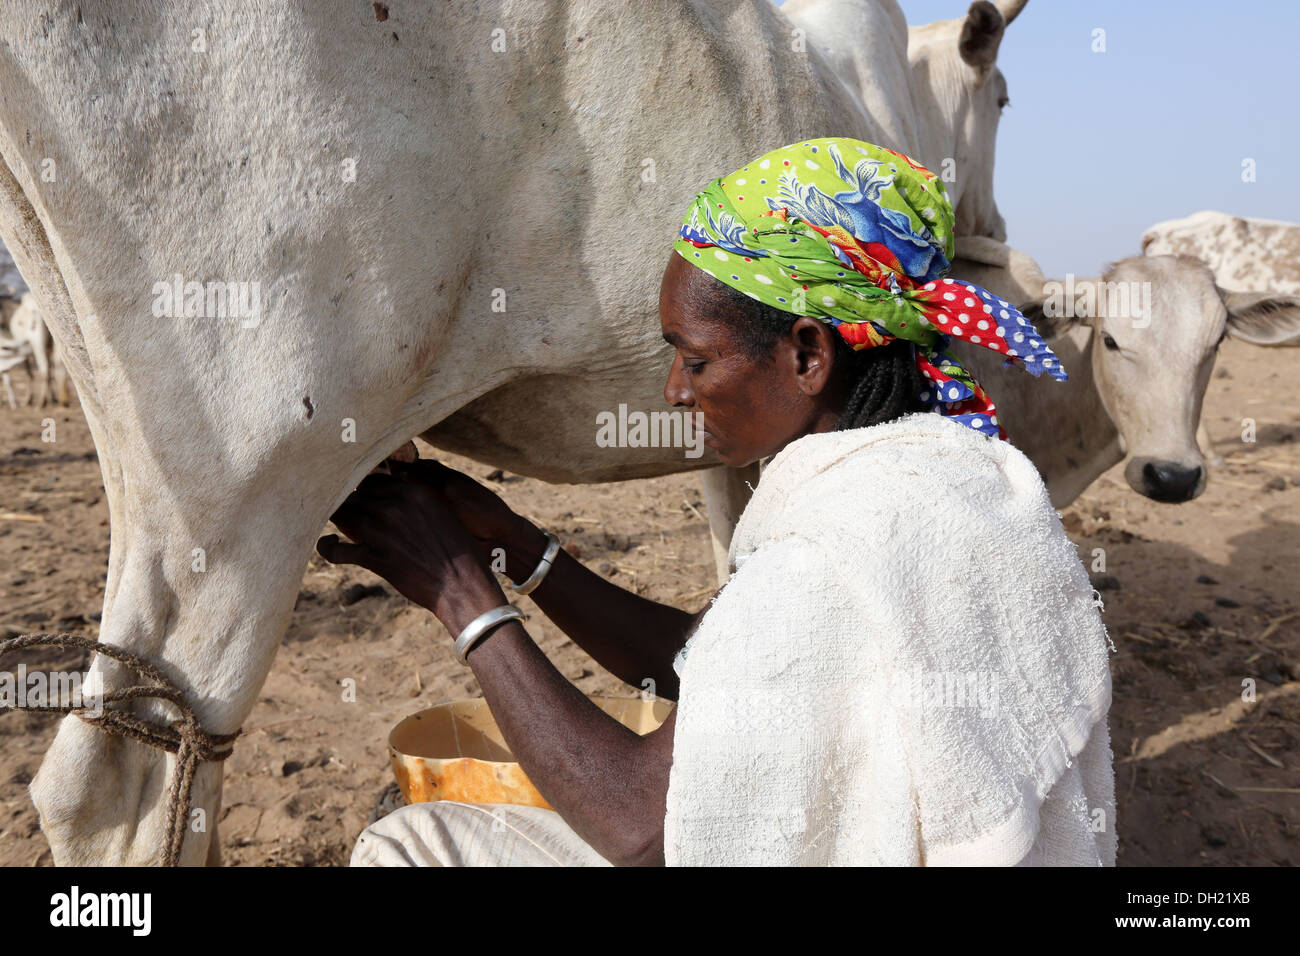 Woman in northern Burkina Faso milking cow Stock Photo